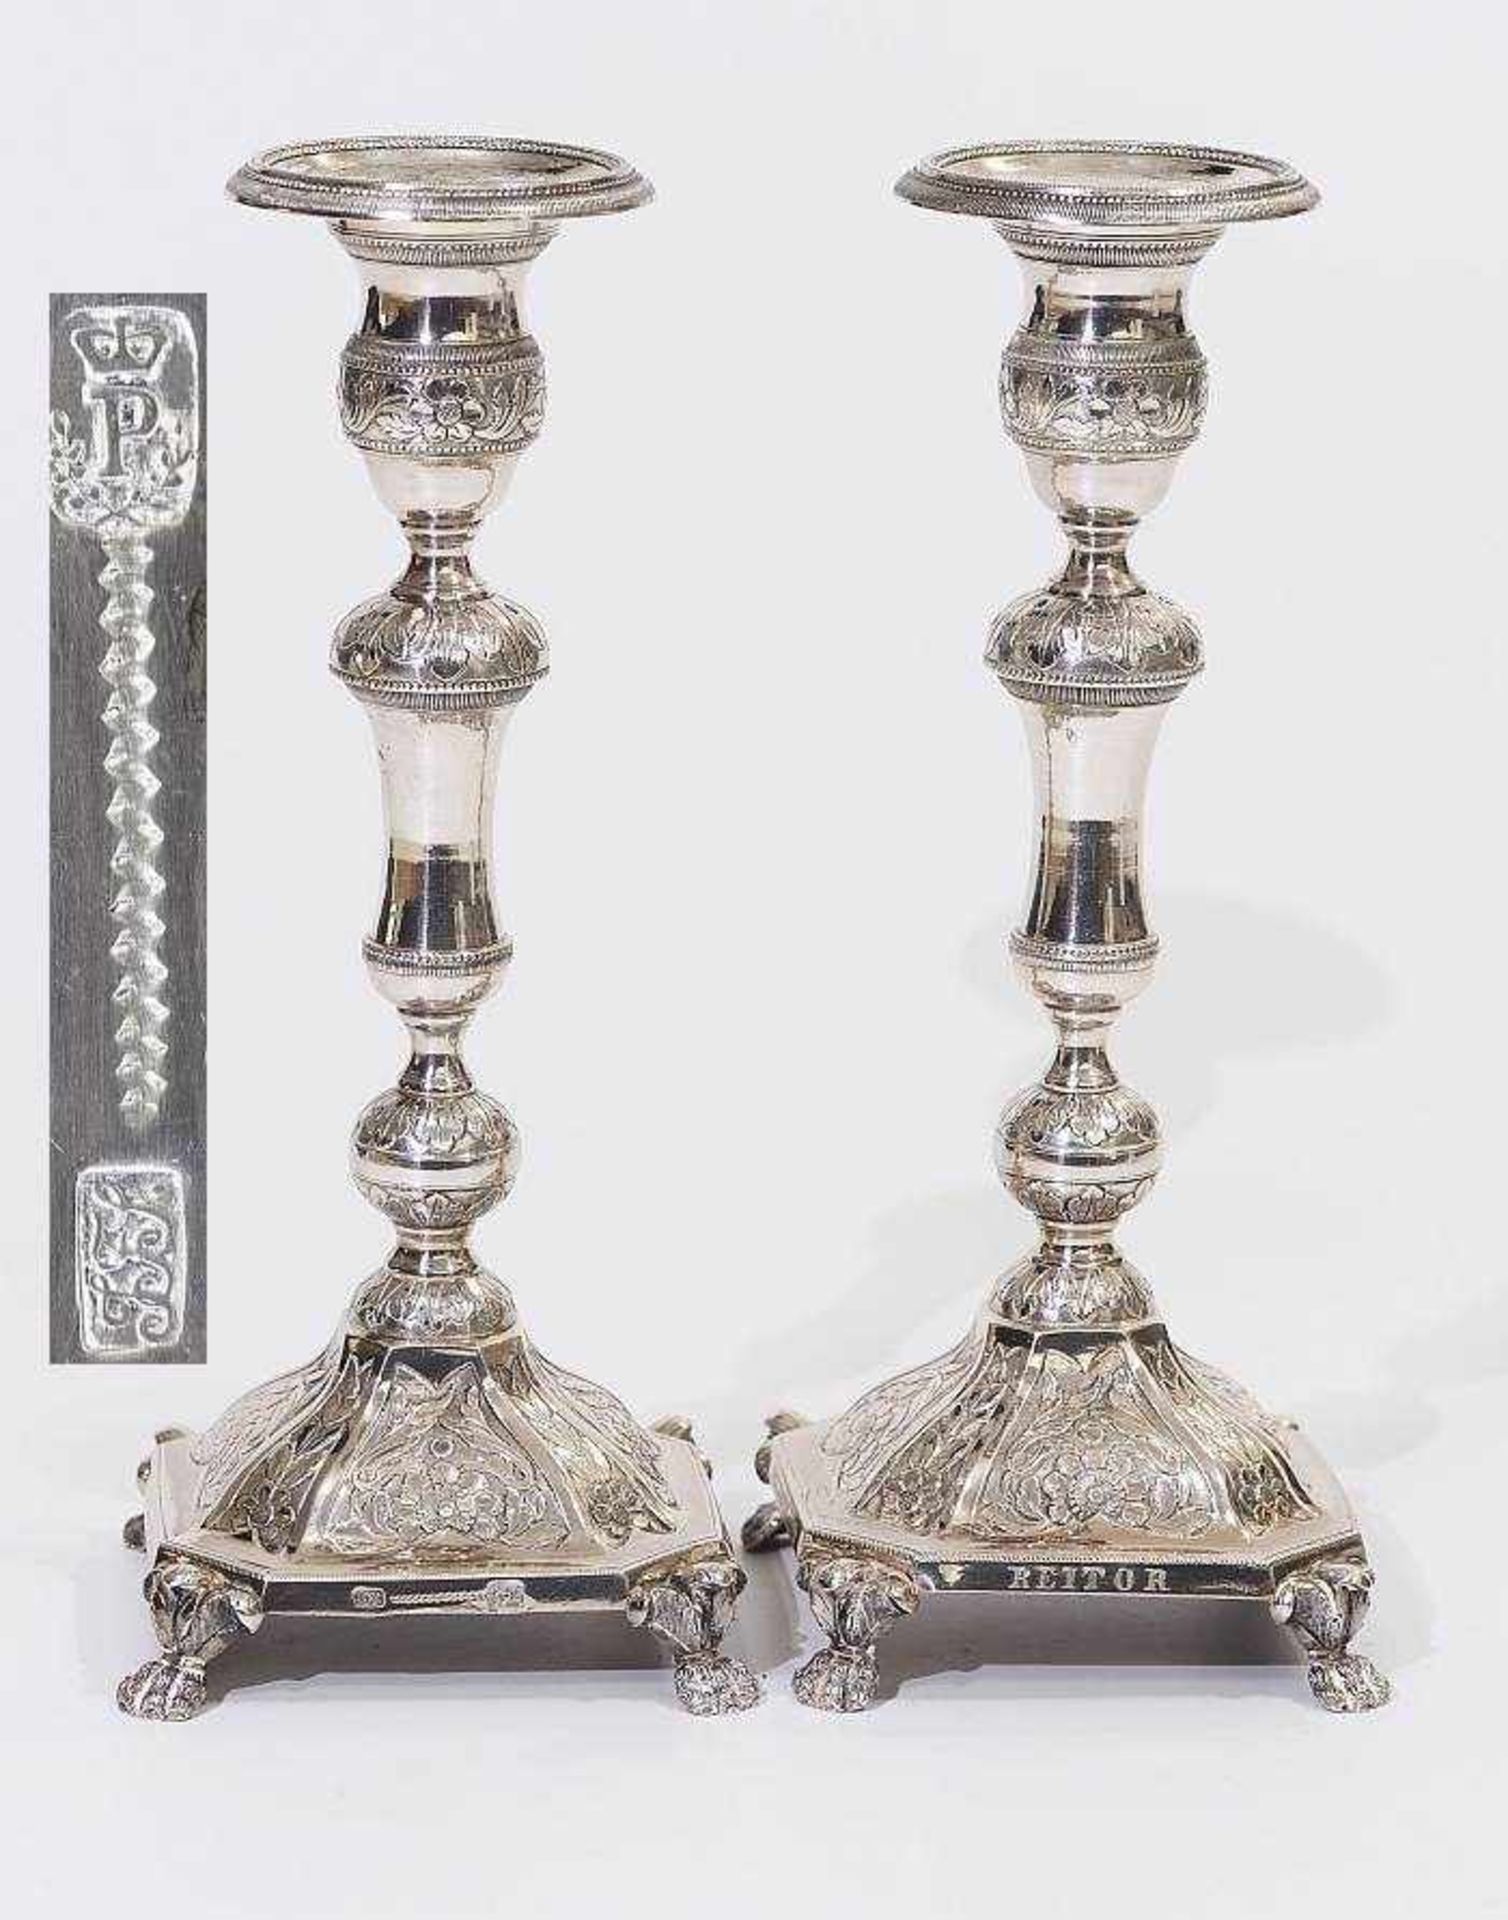 Paar Kerzenleuchter, datiert 1848. Paar Kerzenleuchter, datiert 1848. Silber, getrieben, graviert.